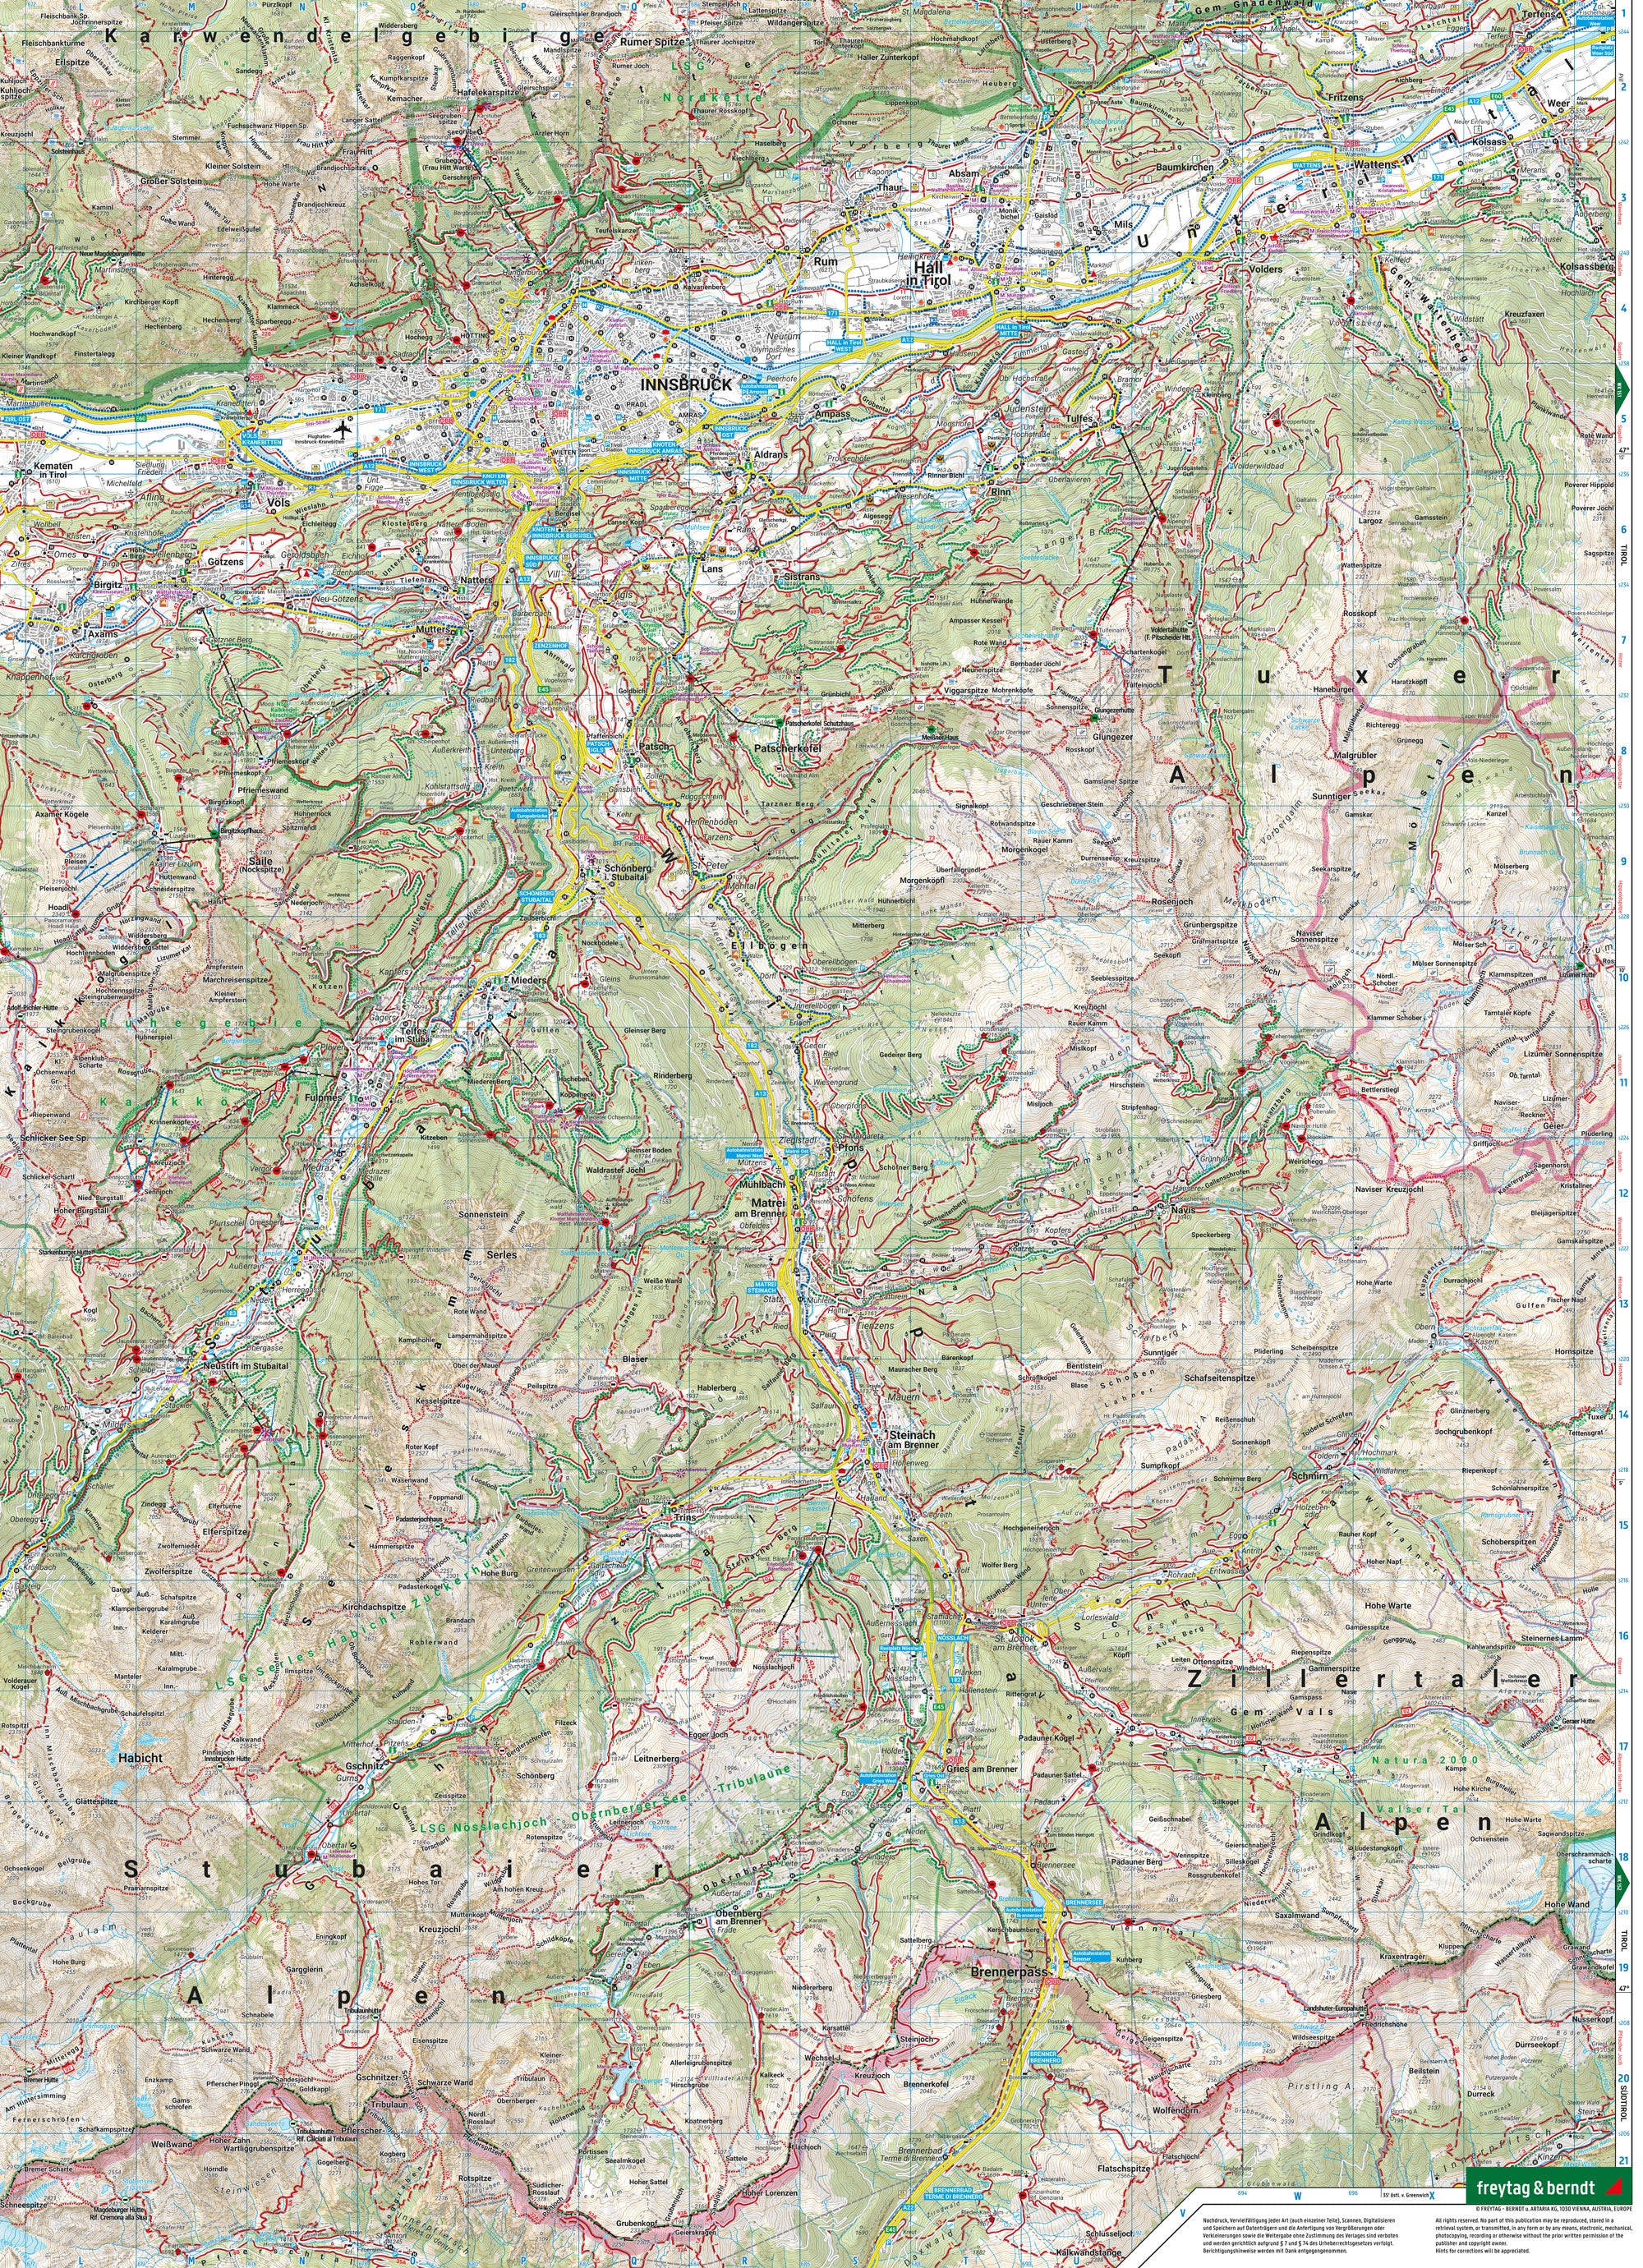 Innsbruck, Wander-, Rad- und Freizeitkarte 1:50.000 - Freytag & Berndt